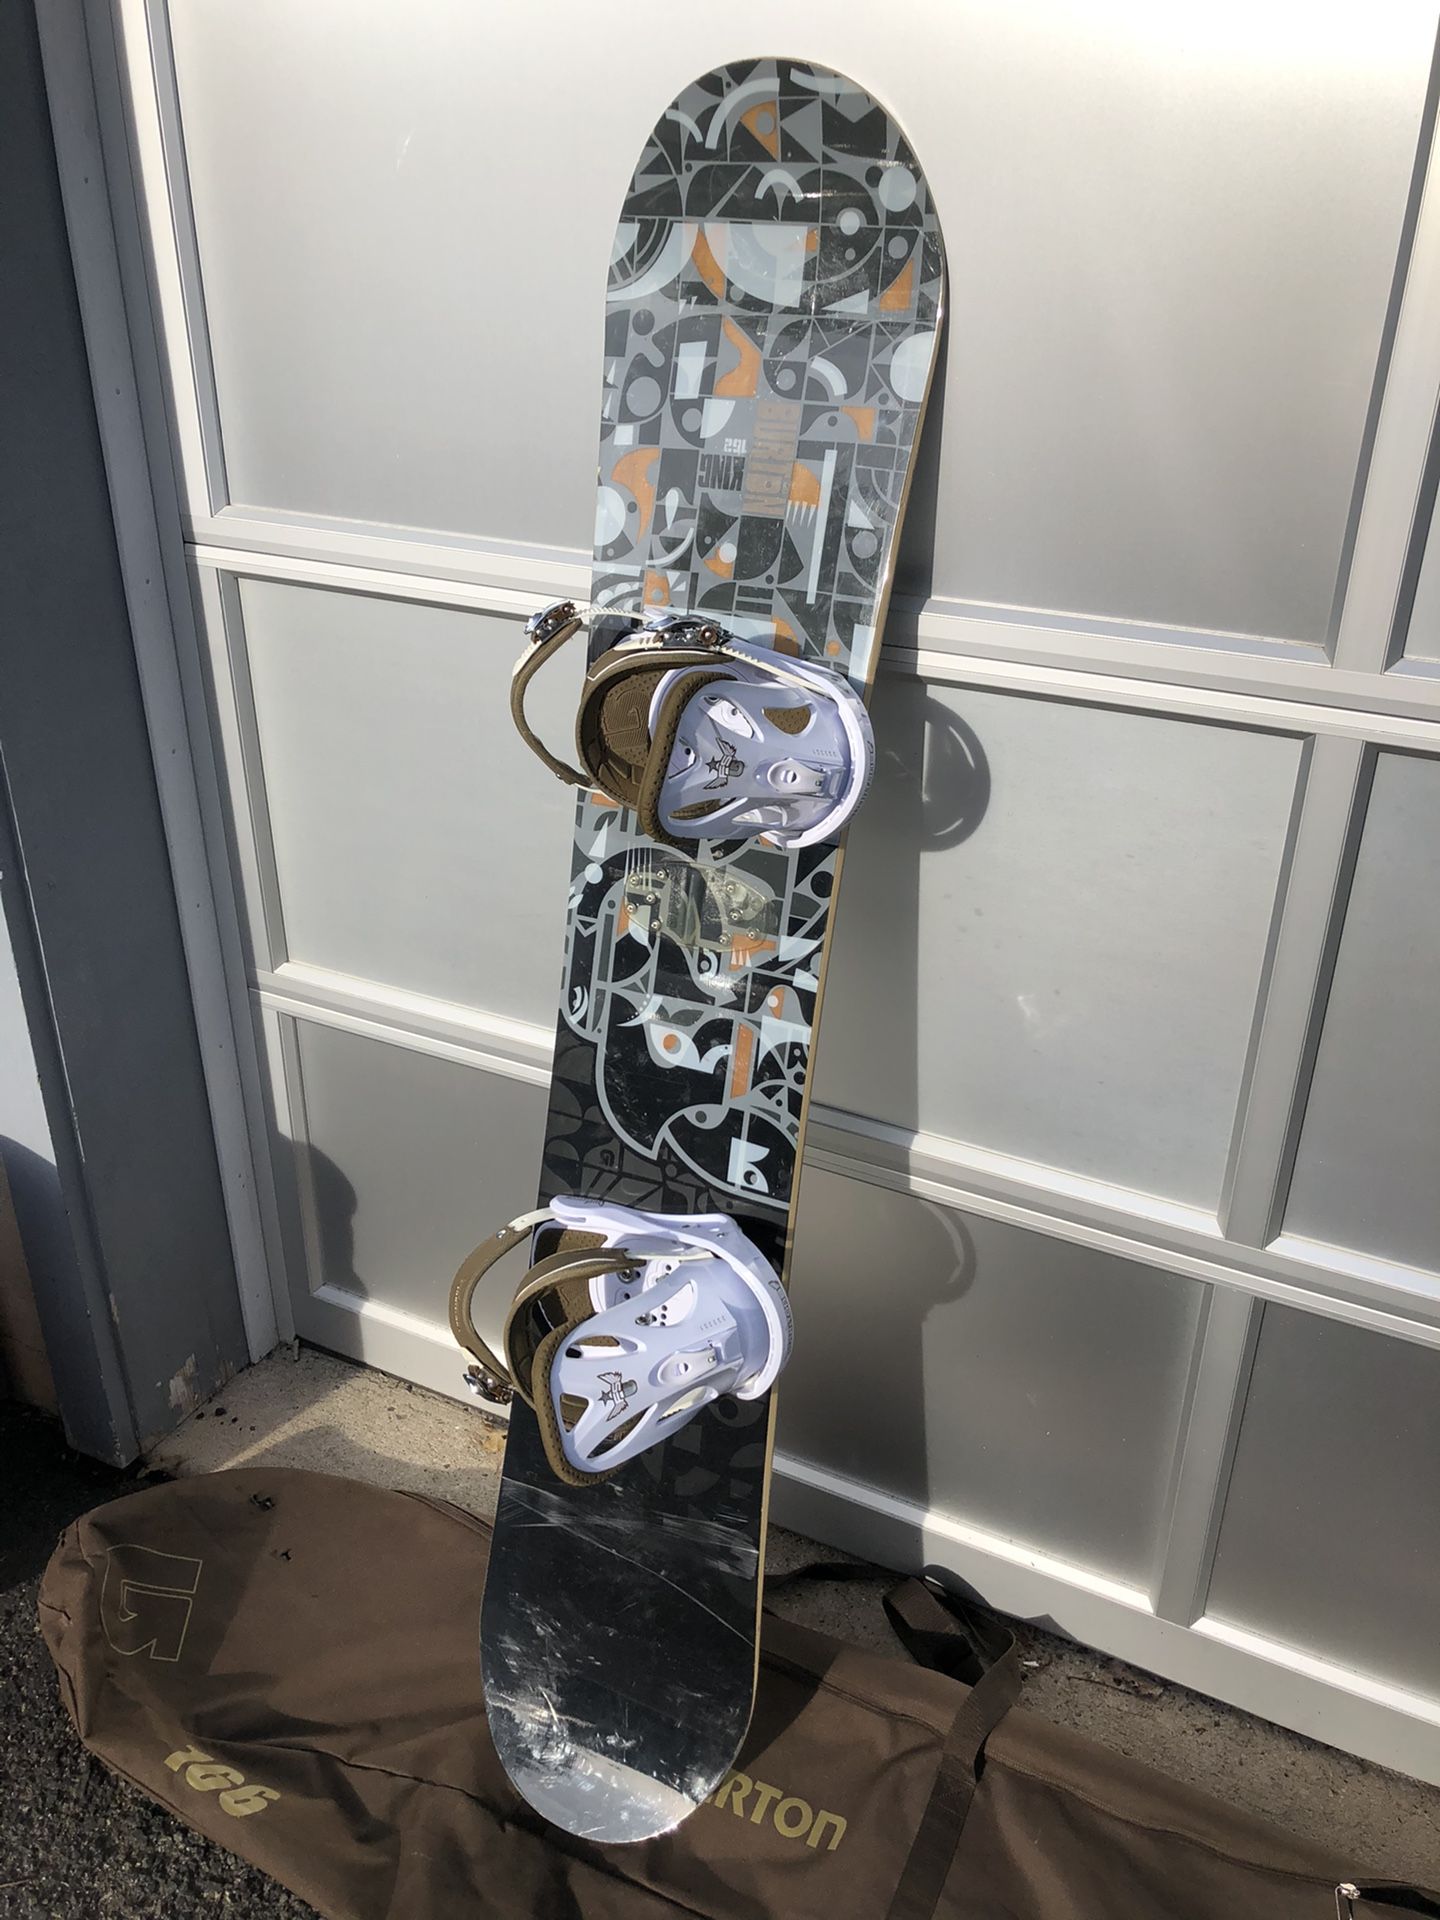 Burton King 162 snowboard, bindings and bag VGC